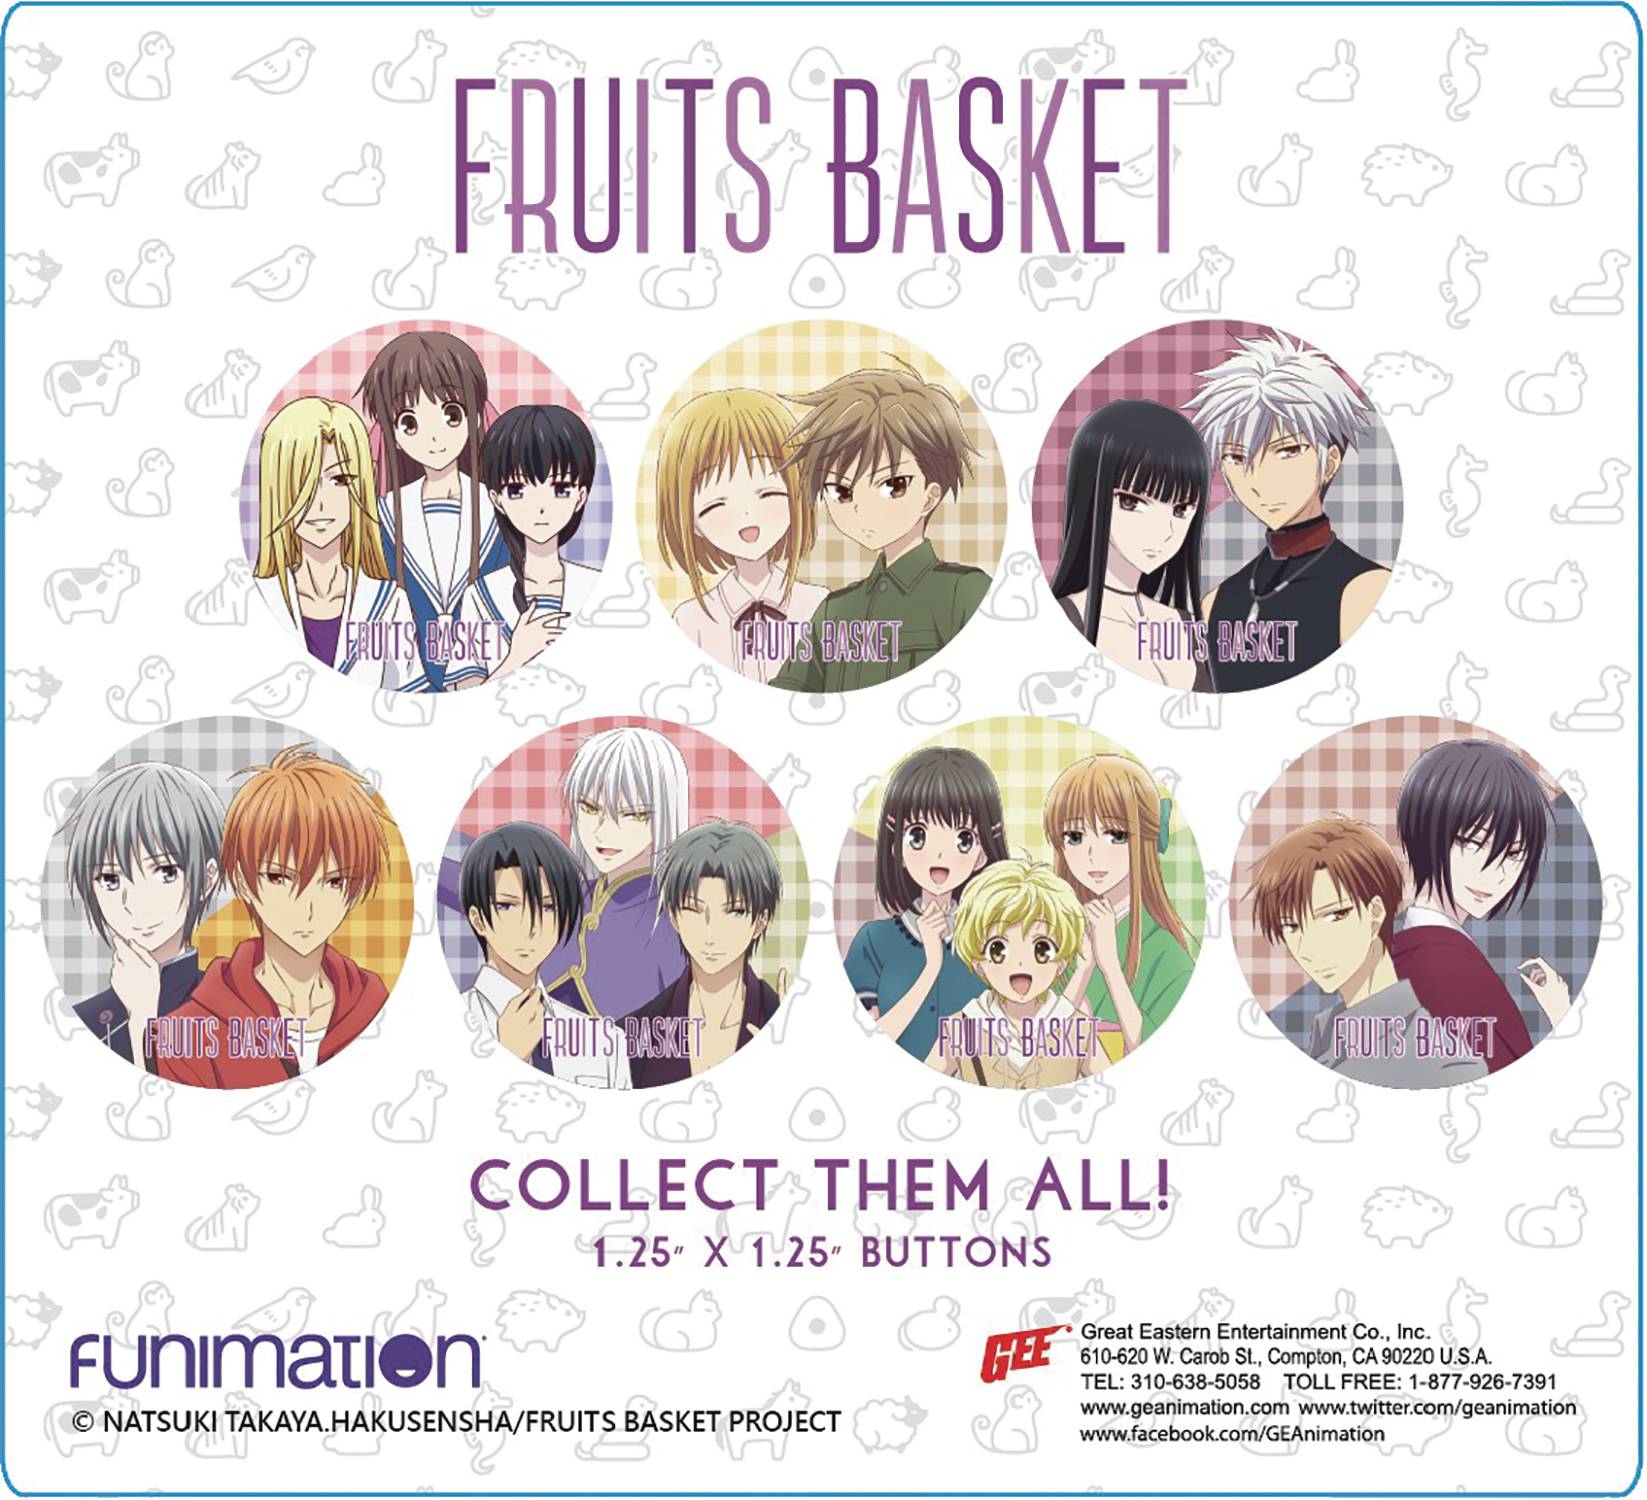 Fruit Basket 2019  Fruits basket, Fruits basket anime, Fruit basket (anime)